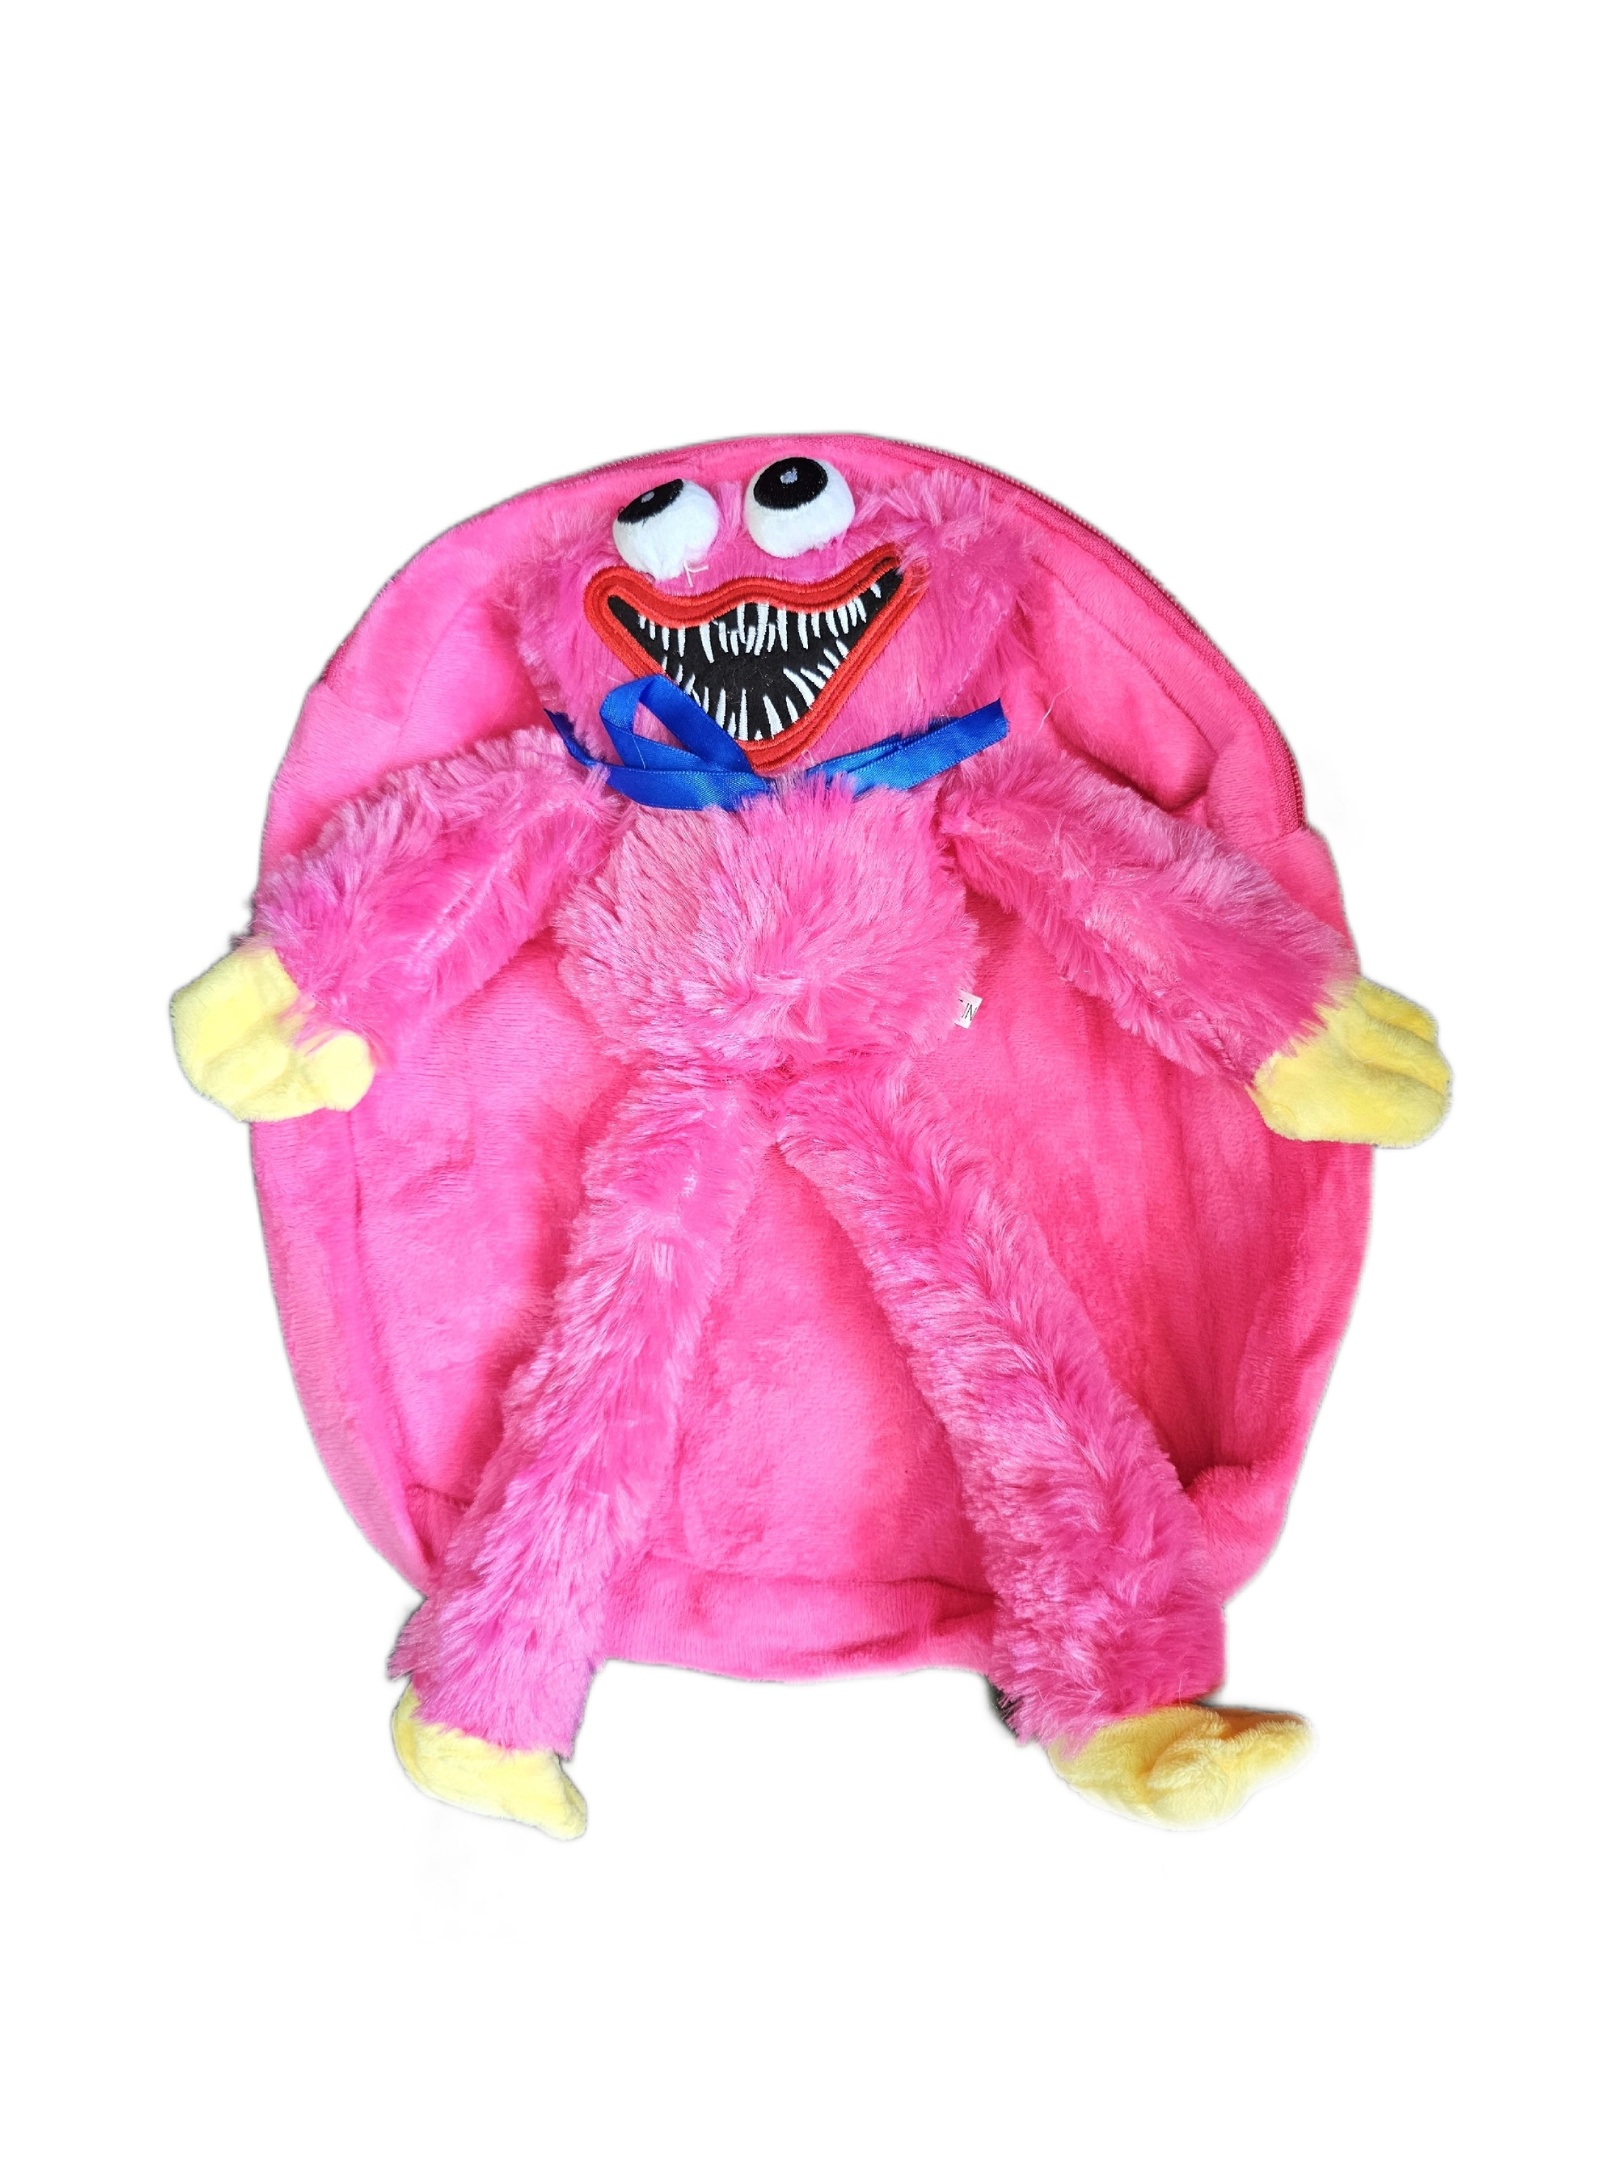 Рюкзак детский плюшевый с игрушкой Кисси Мисси Хаги Ваги, цвет розовый пушистый рюкзак panawealth хагги вагги кисси мисси кисси мисси розовый